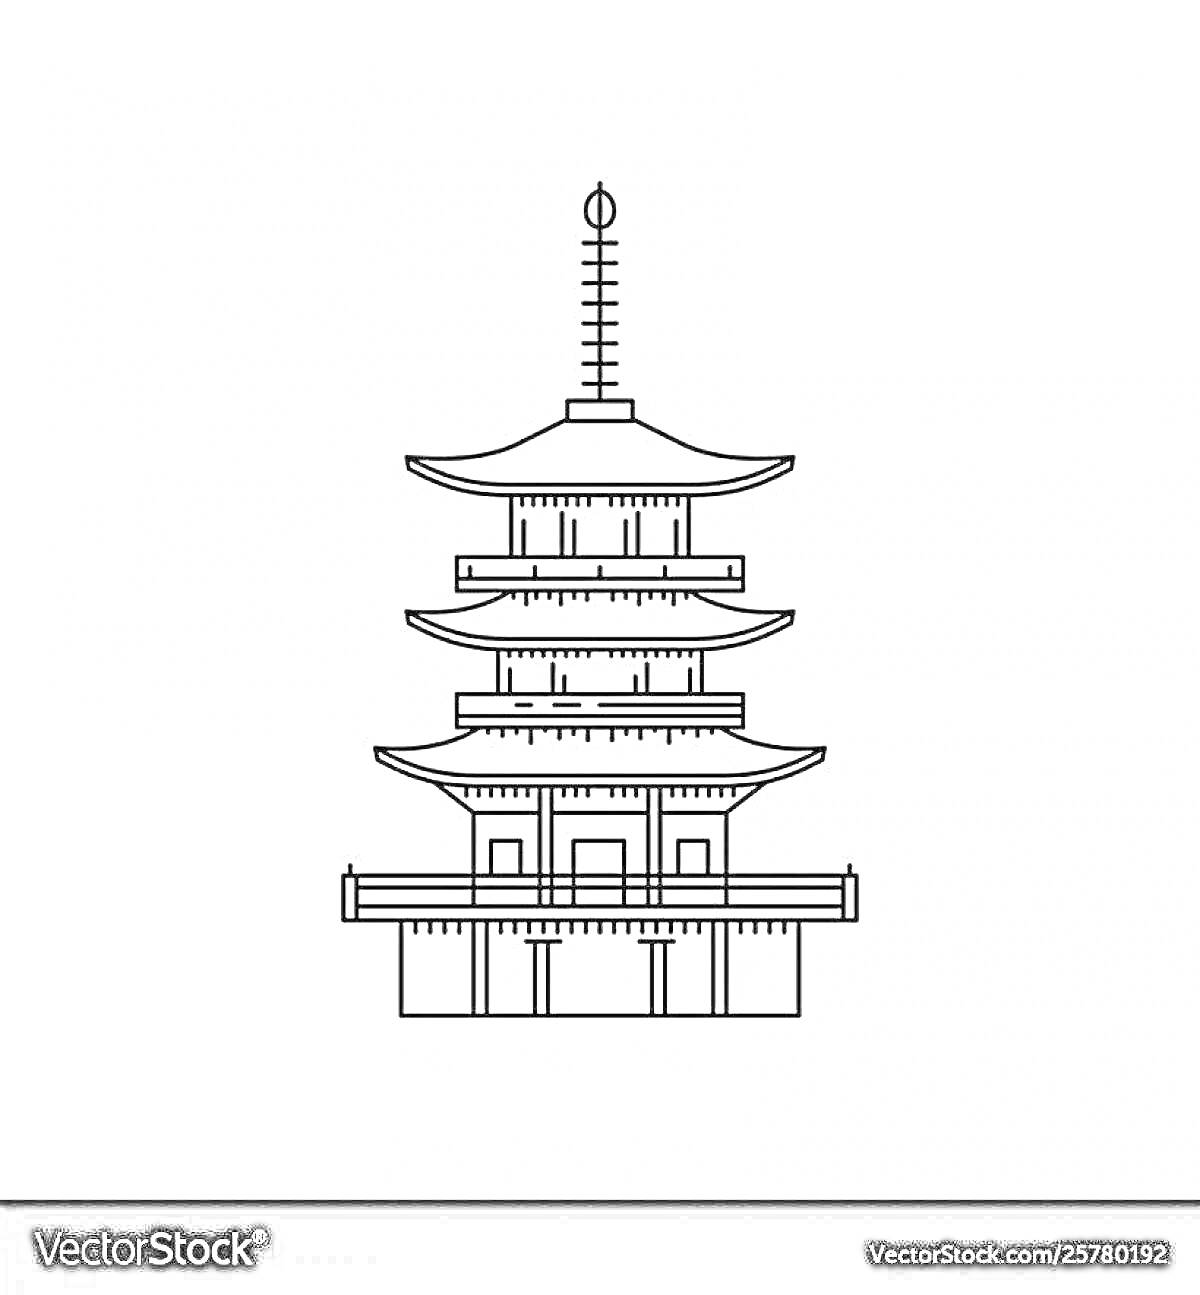 Раскраска Пагода с пятью ярусами, три крыши, а также флагшток на верхушке